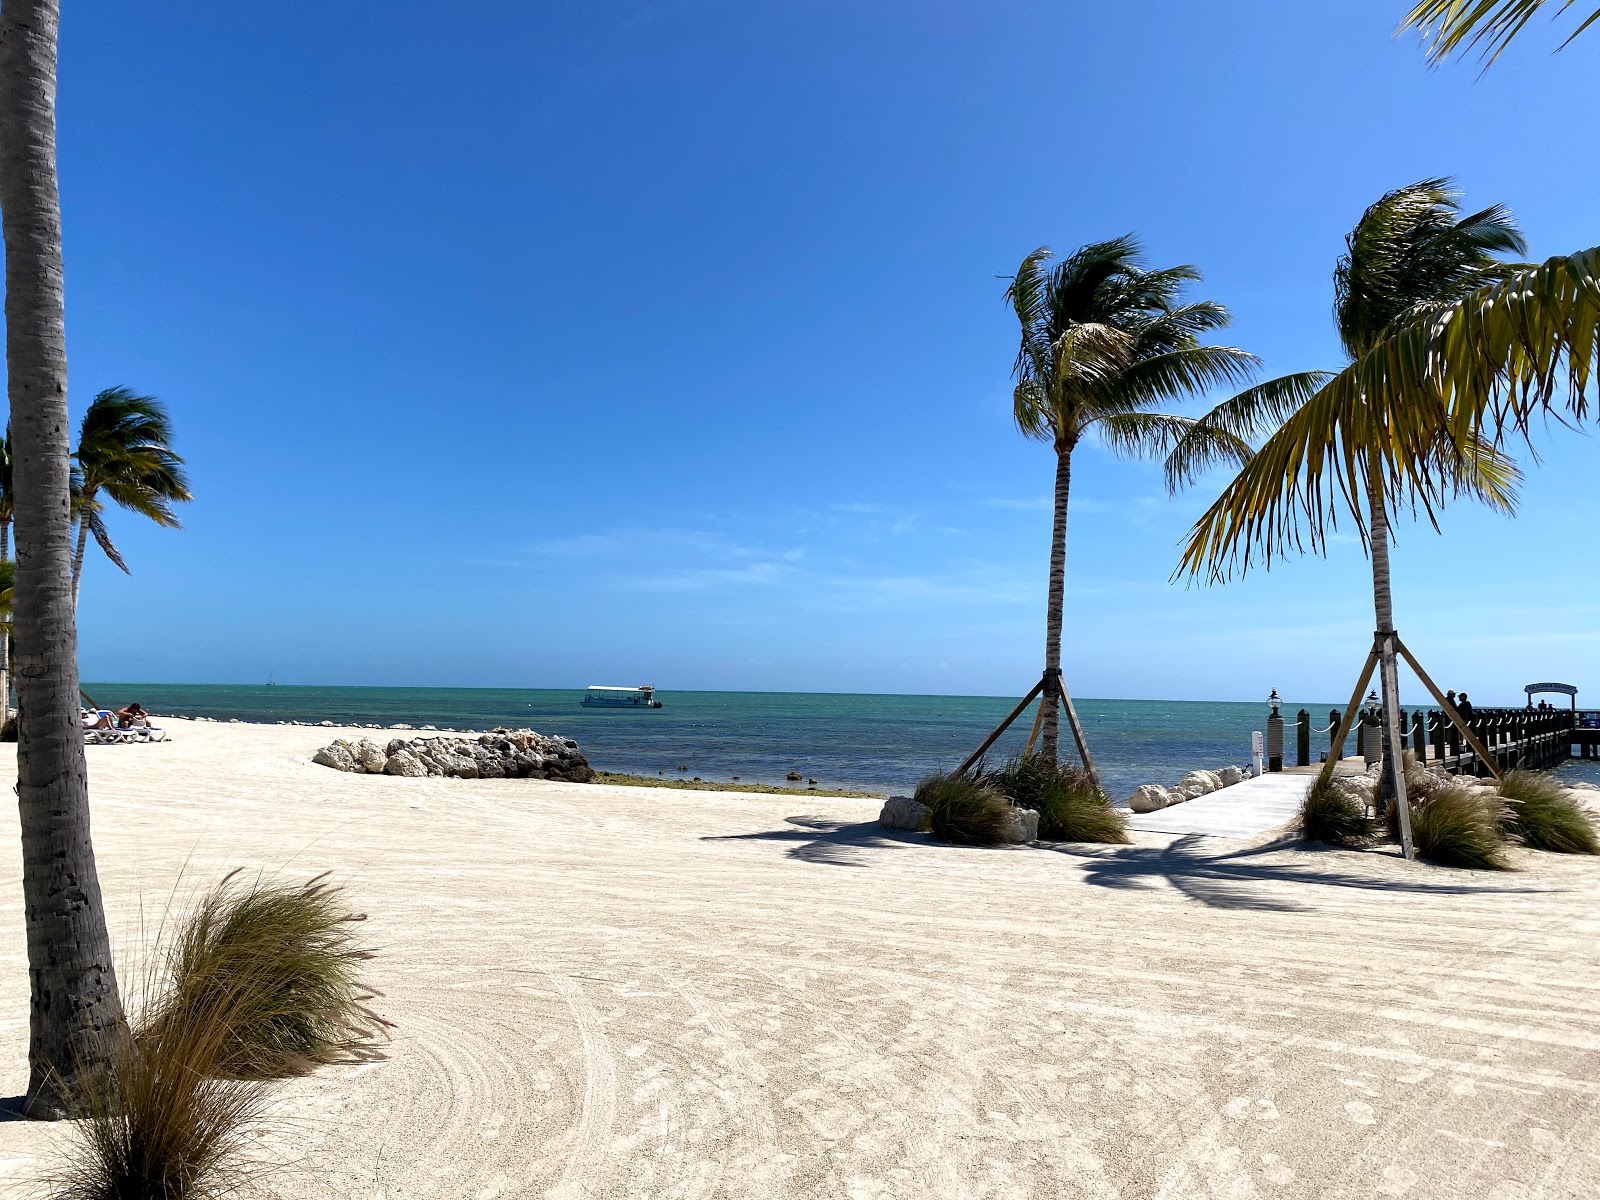 Zdjęcie Islander beach - popularne miejsce wśród znawców relaksu